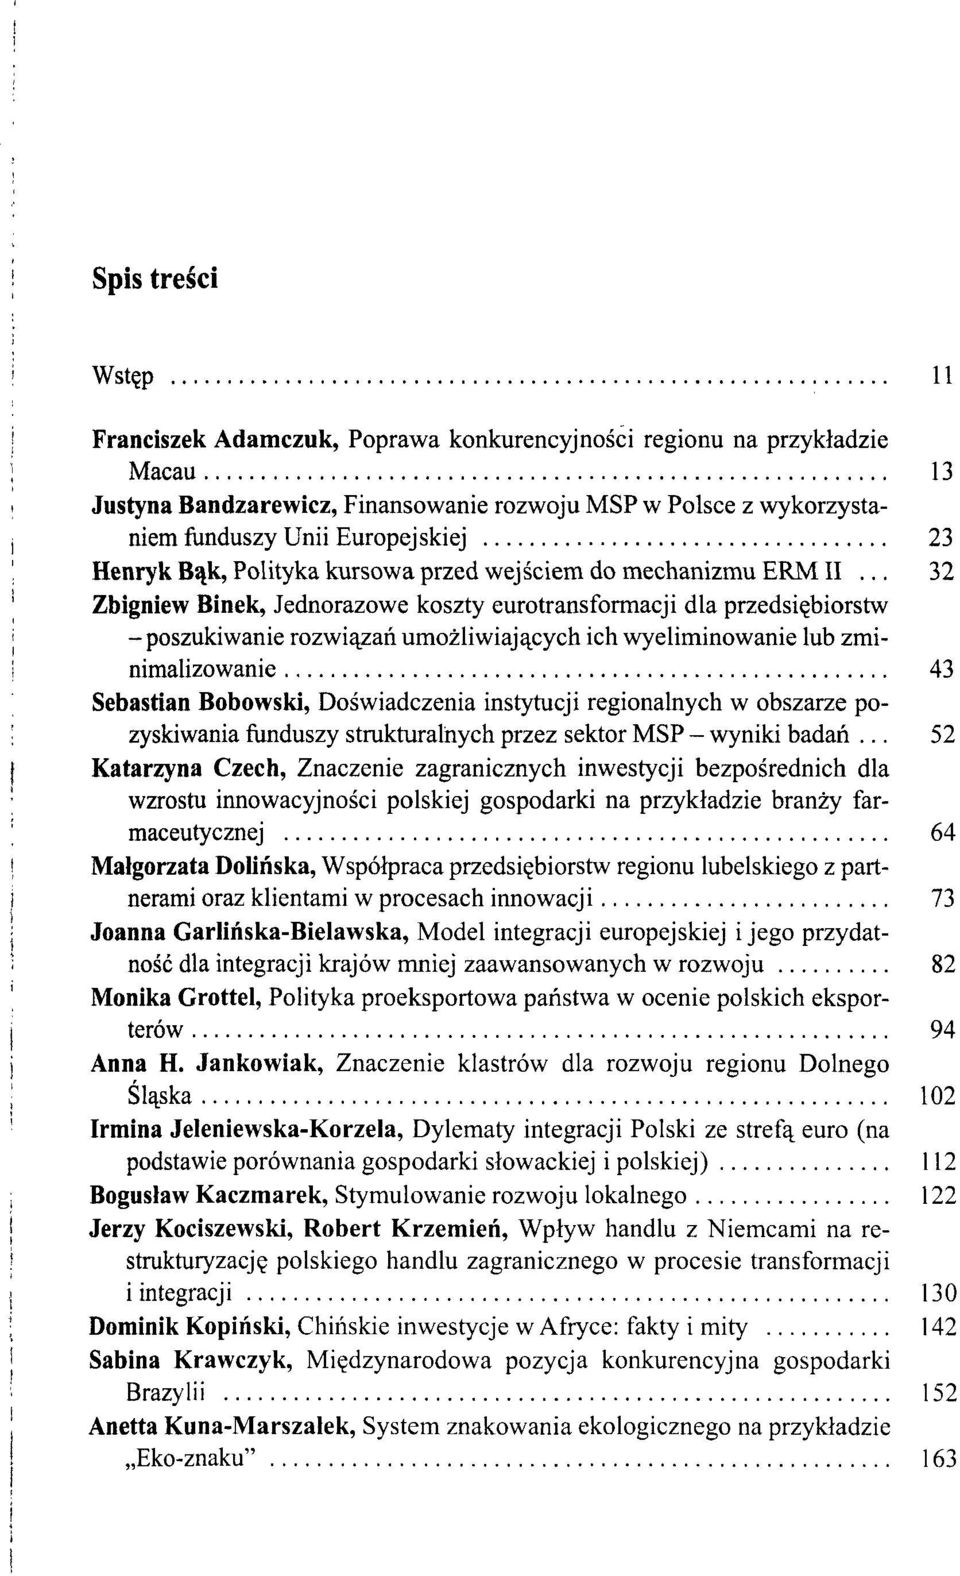 .. 32 Zbigniew Binek, Jednorazowe koszty eurotransformacji dla przedsiębiorstw -poszukiwanie rozwiązań umożliwiających ich wyeliminowanie lub zminimalizowanie 43 Sebastian Bobowski, Doświadczenia